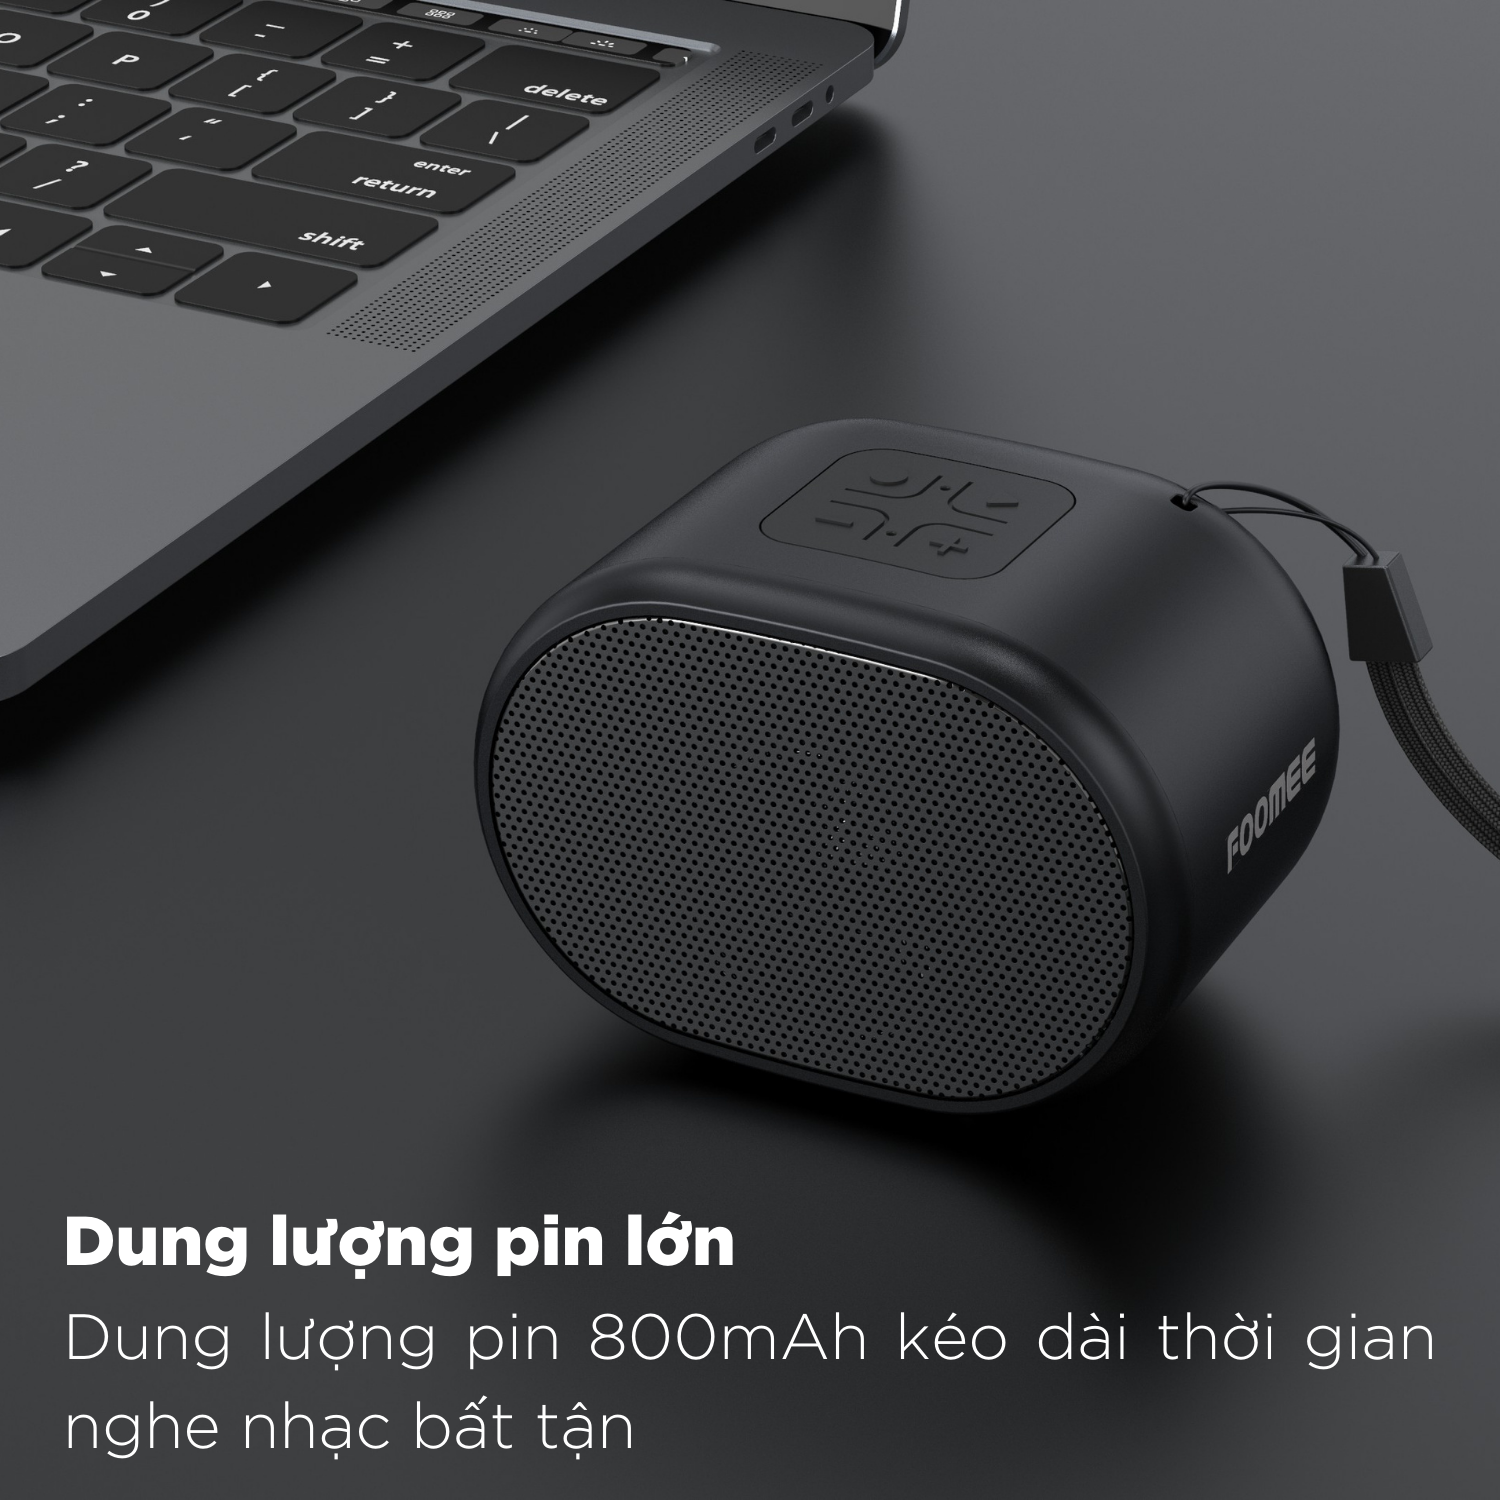 Loa Bluetooth Mini Pin FOOMEE HH20 - 1200mAh Có Cảm Ứng Hỗ Trợ Thẻ TF Và USB Kết Nối Điện Thoại - Màu Đen - Hàng Chính Hãng